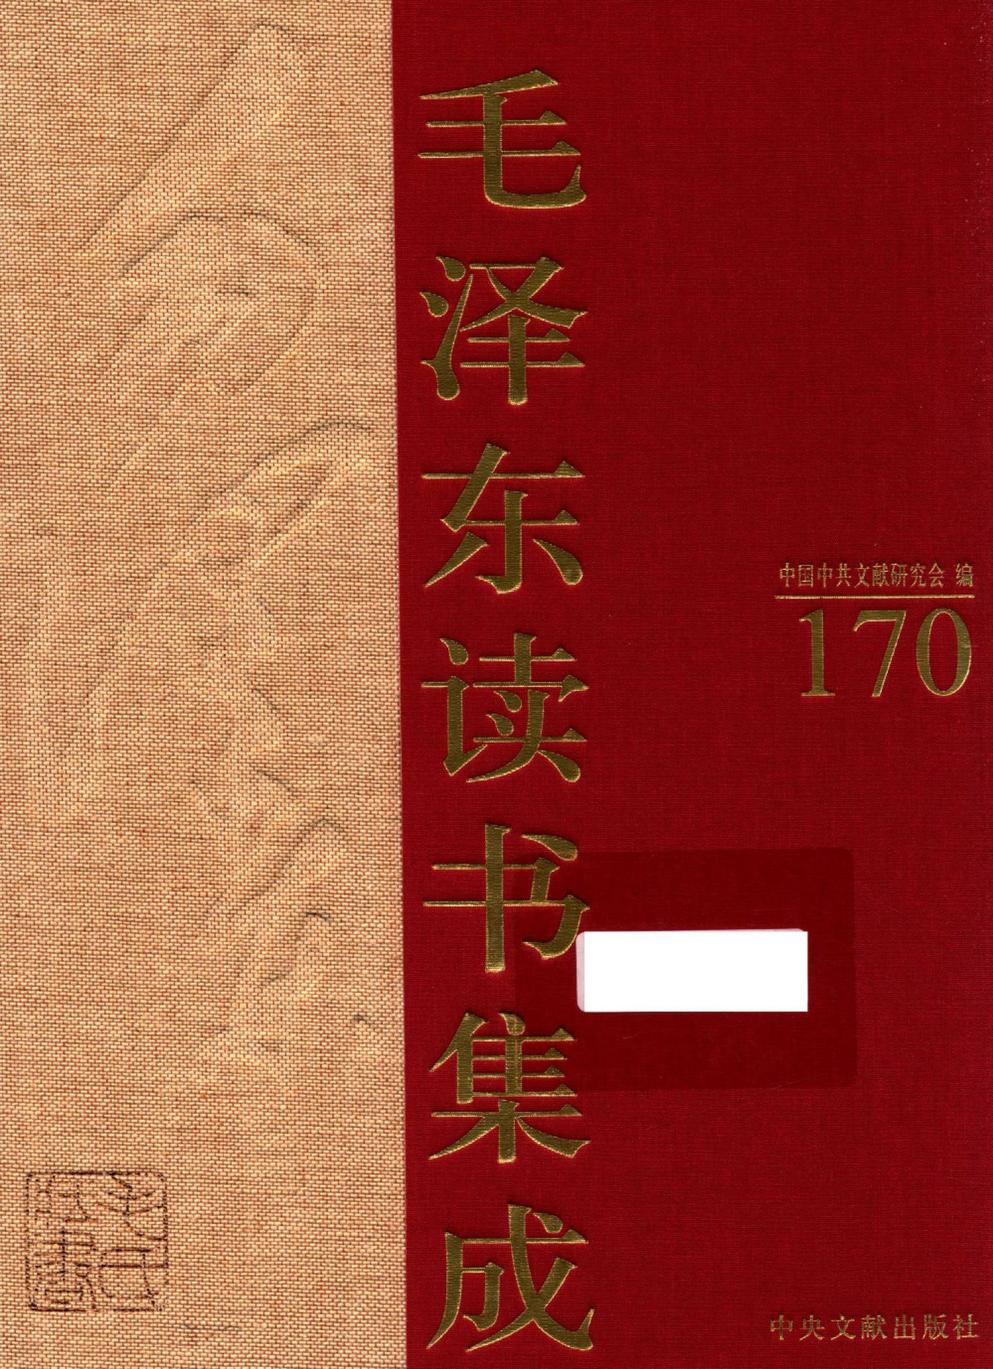 毛泽东读书集成（第170卷）-1